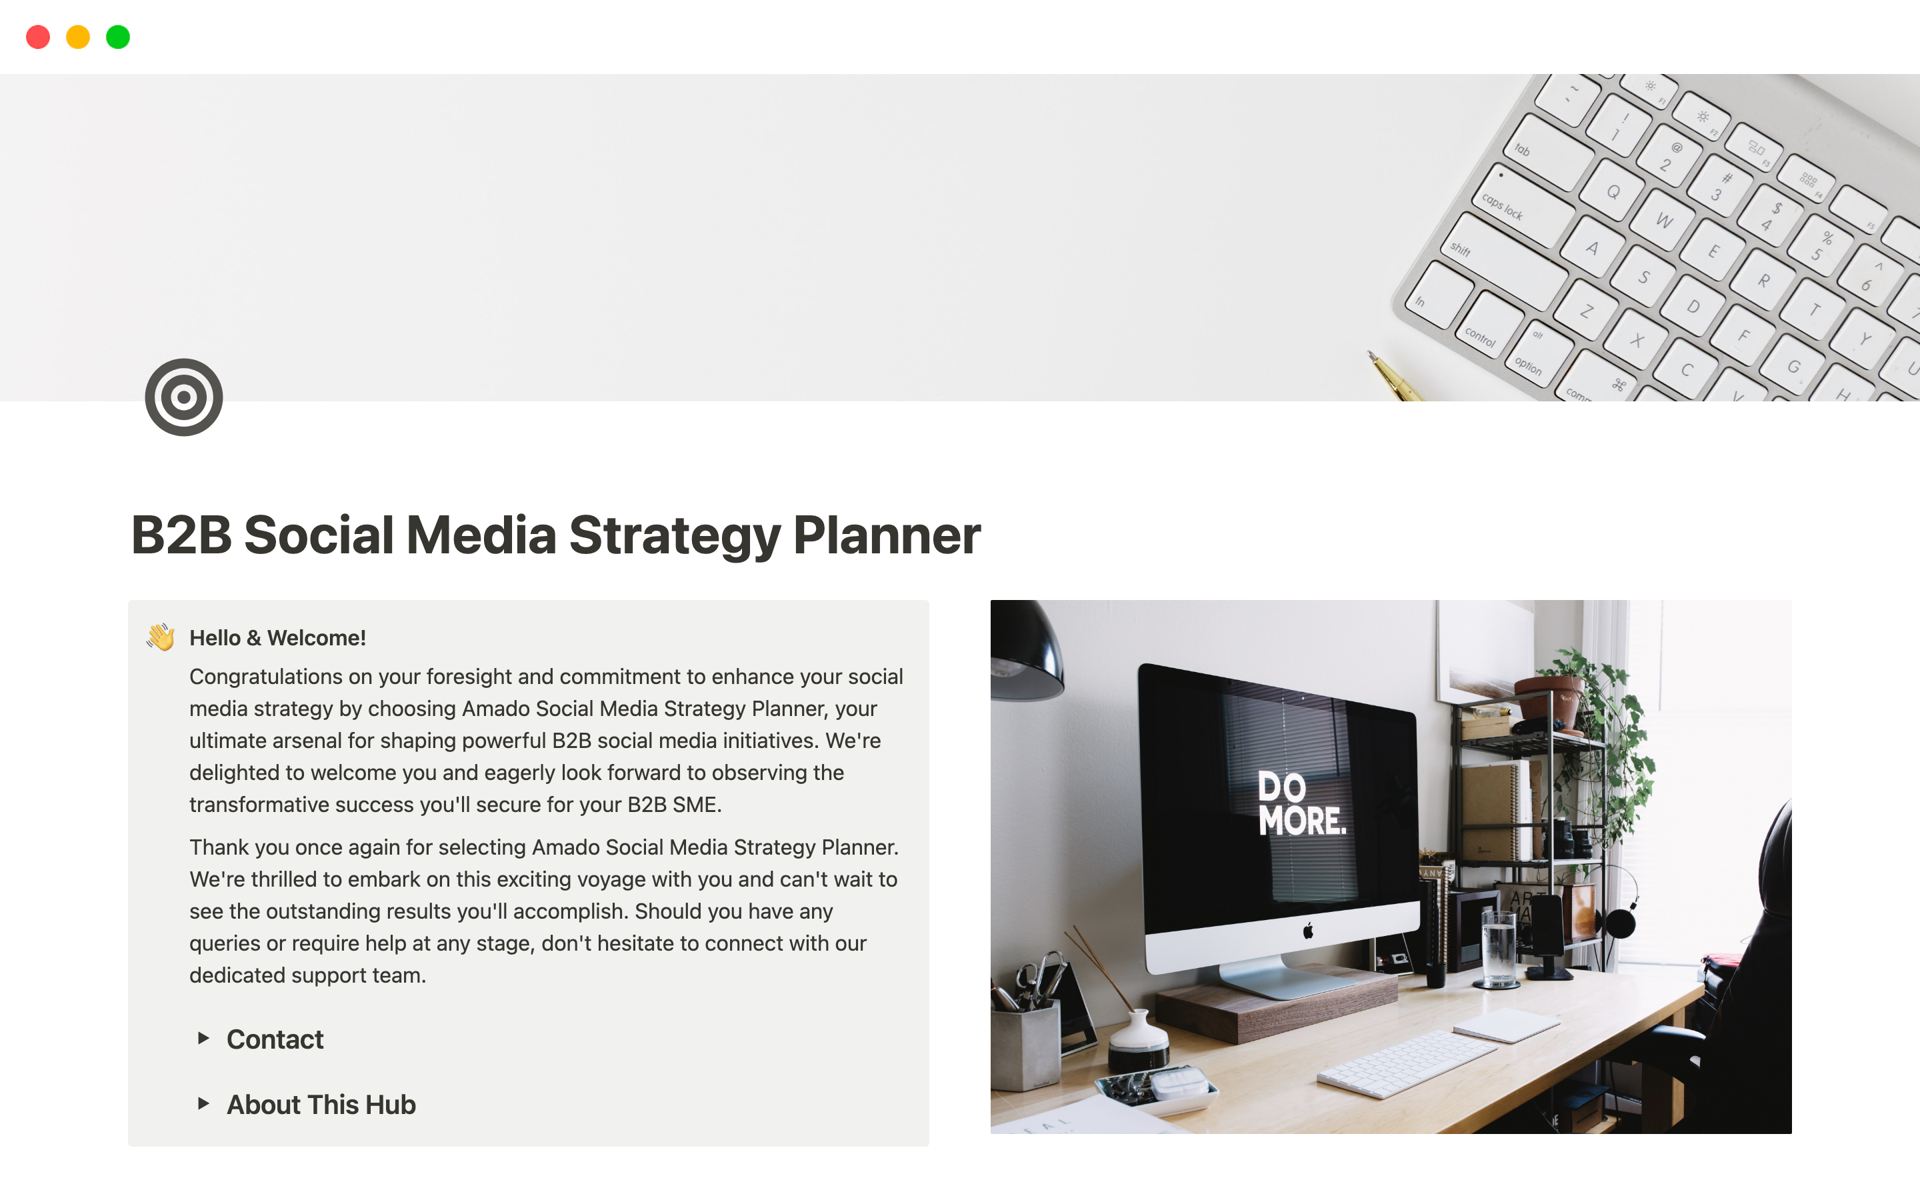 Uma prévia do modelo para B2B Social Media Strategy Planner